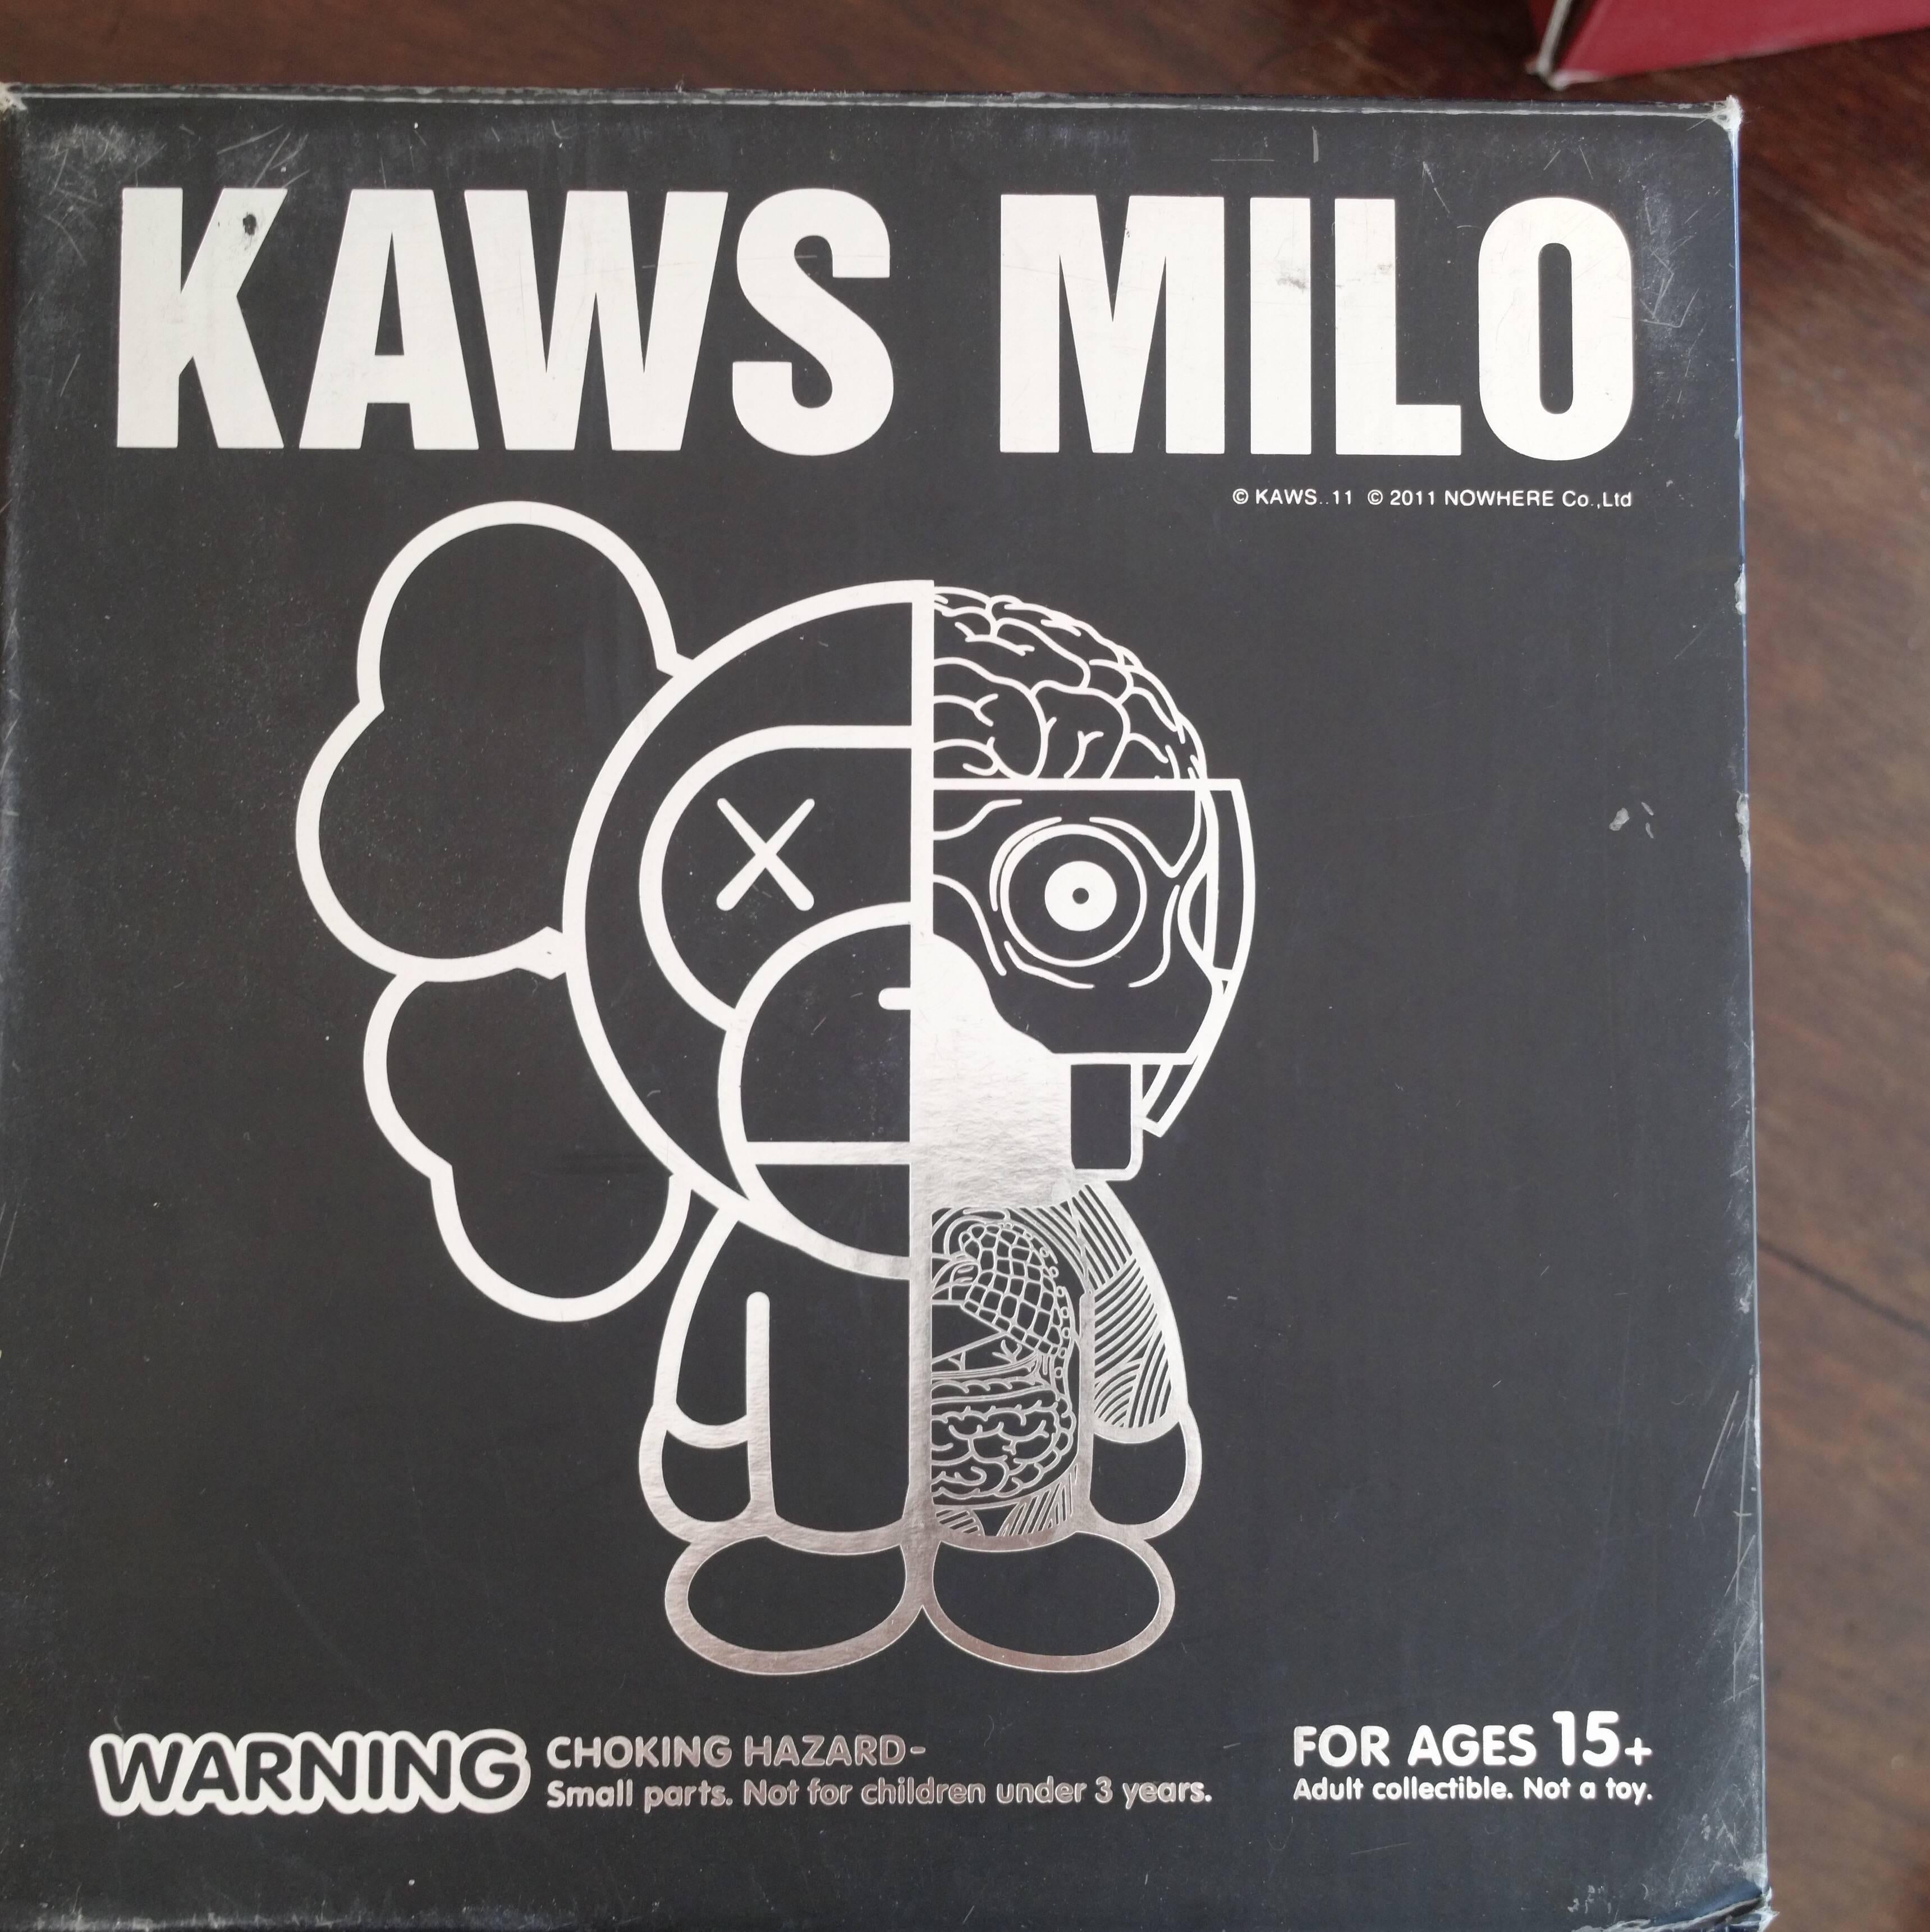 Kaws Milo 2011 'Yellow' a Bathing Ape, OriginalFake, Medicom Toy, Original Box For Sale 1